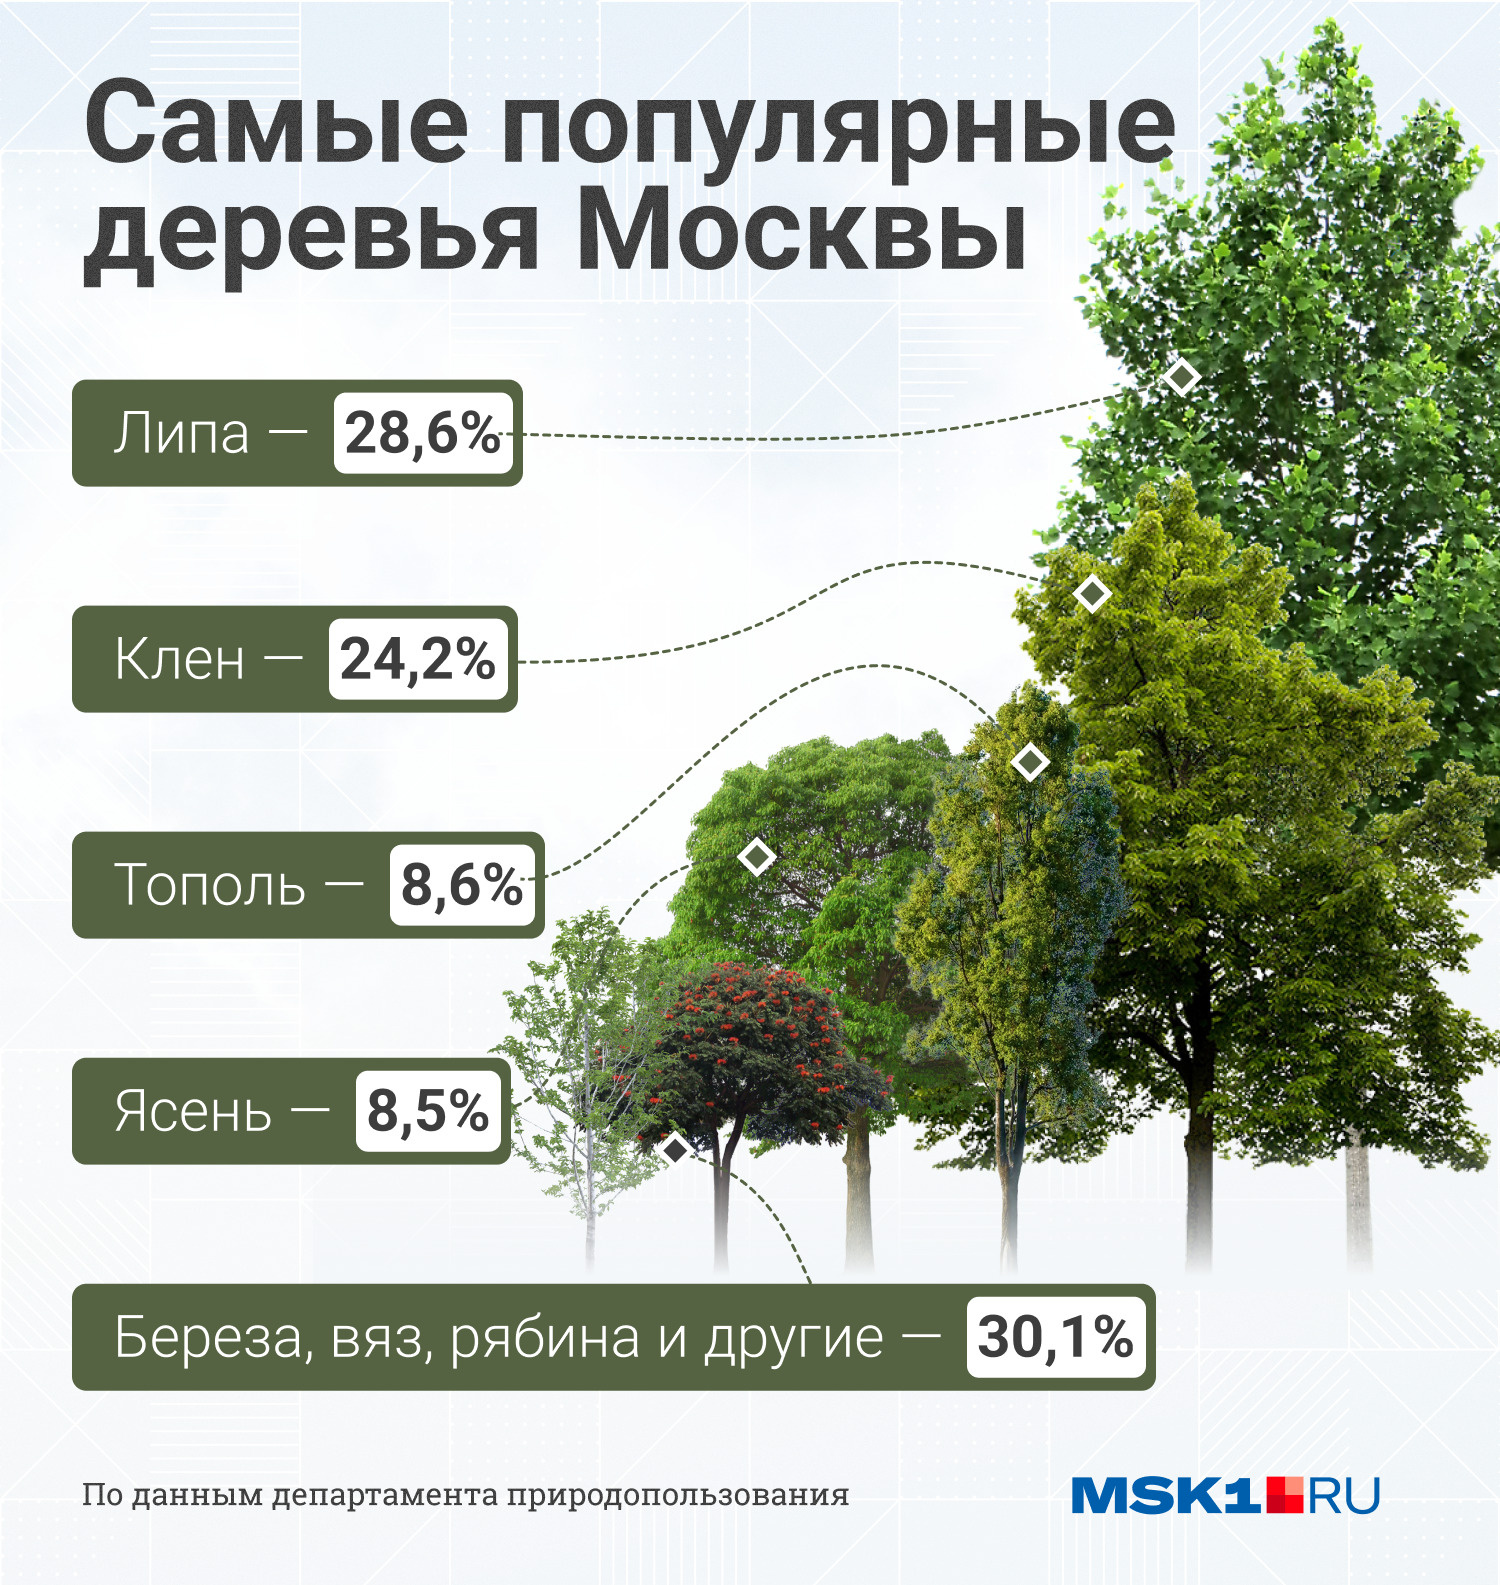 Липы и клены — самые популярные деревья в столице, вместе они занимают более 50% от общего числа деревьев внутри МКАДа